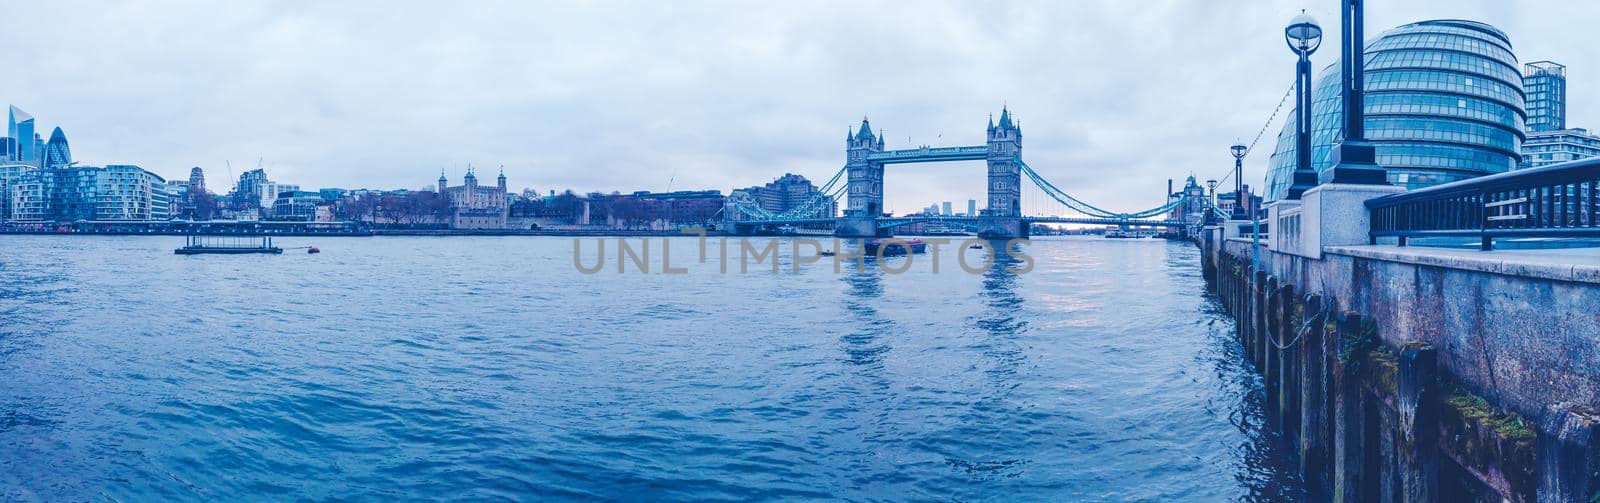 River Thames Panoramic by magicbones